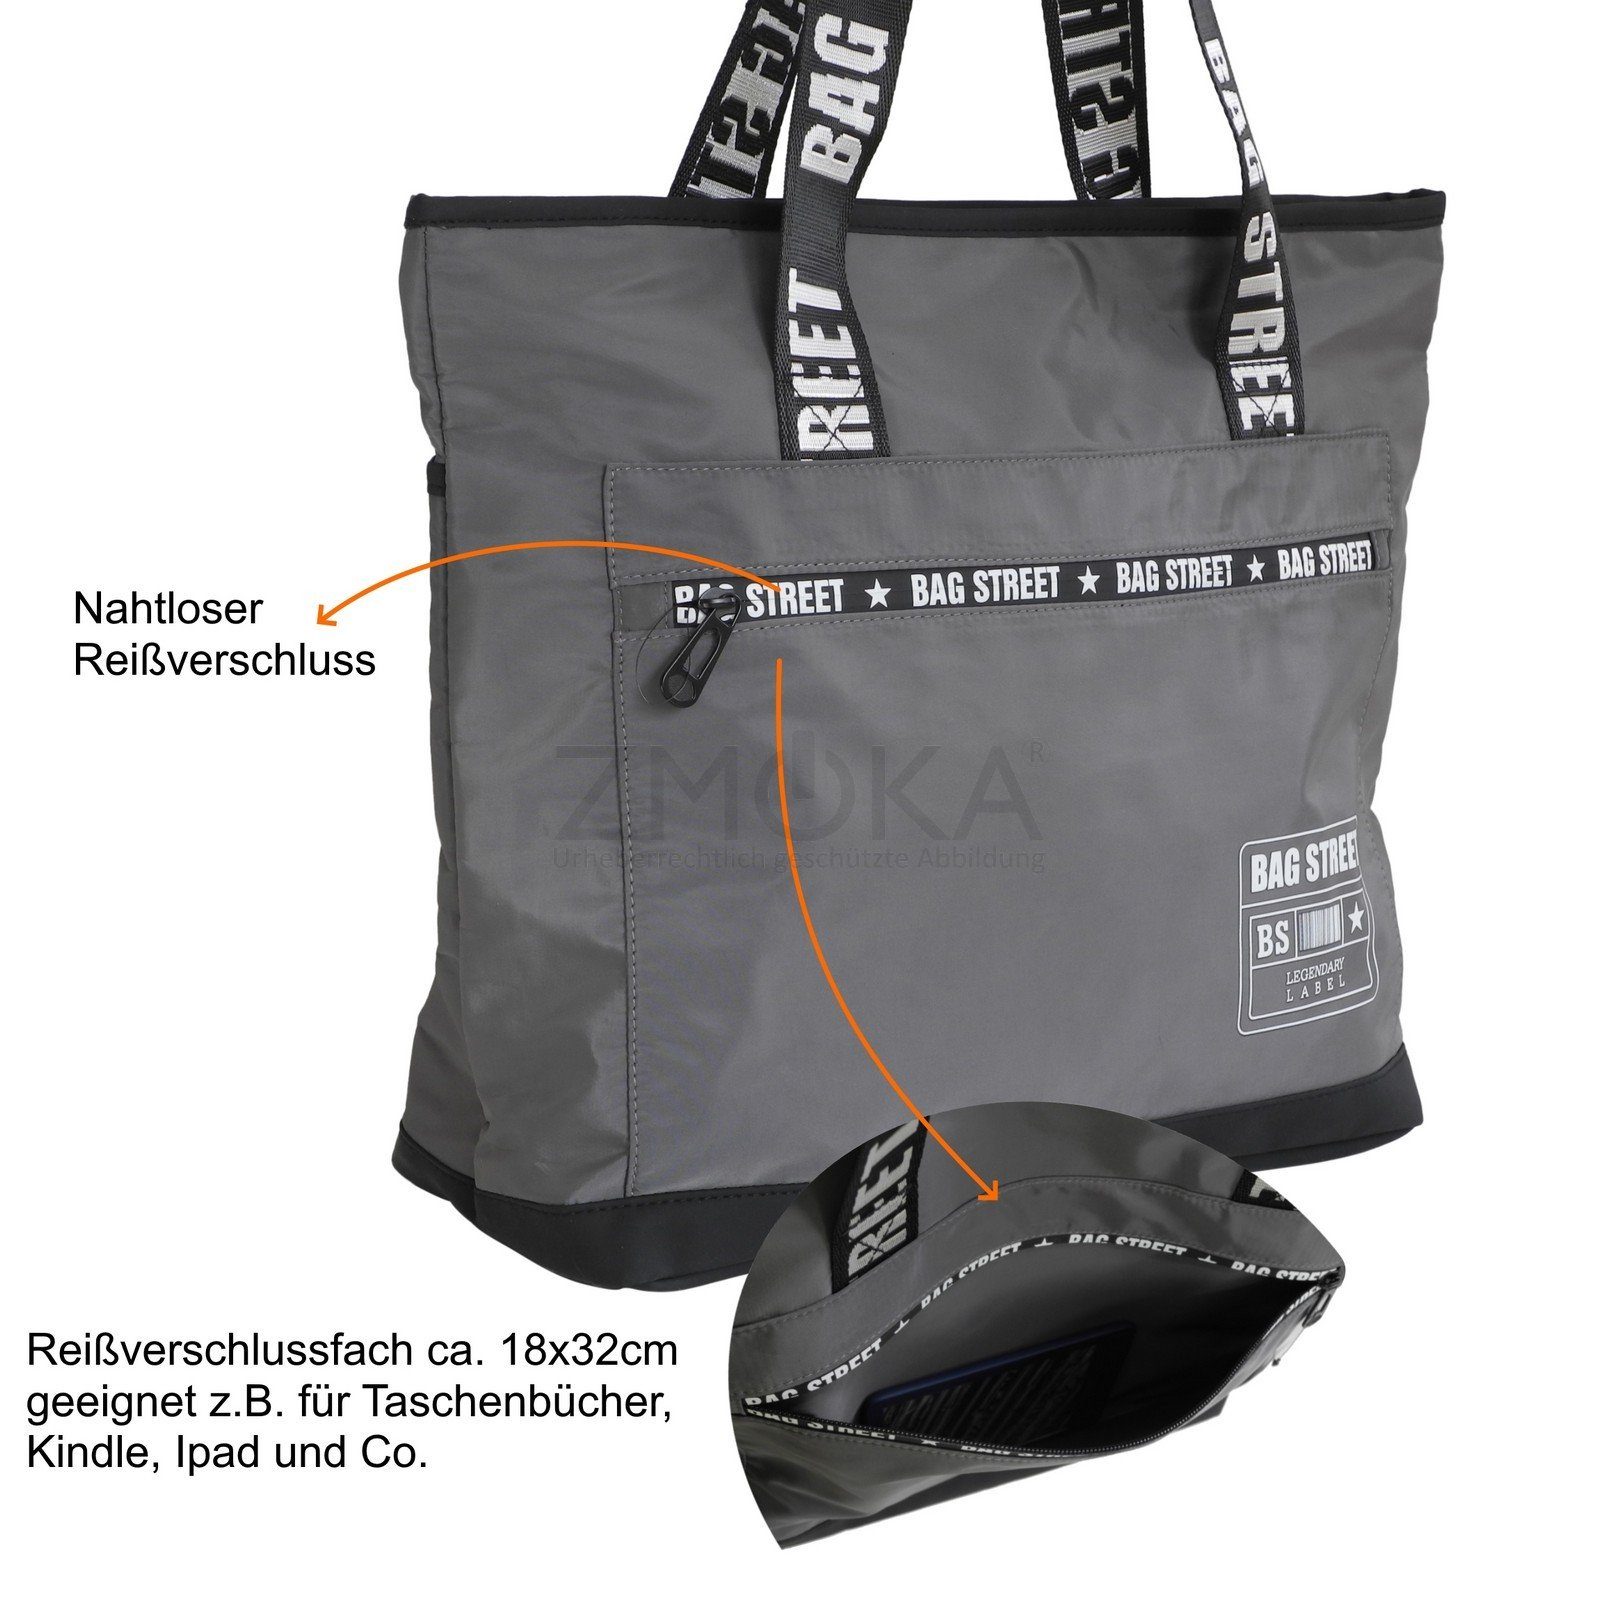 Schultertasche Handtasche BAG STREET Street - leichter Auswahl Shopper Bag Damen Handtasche Grau